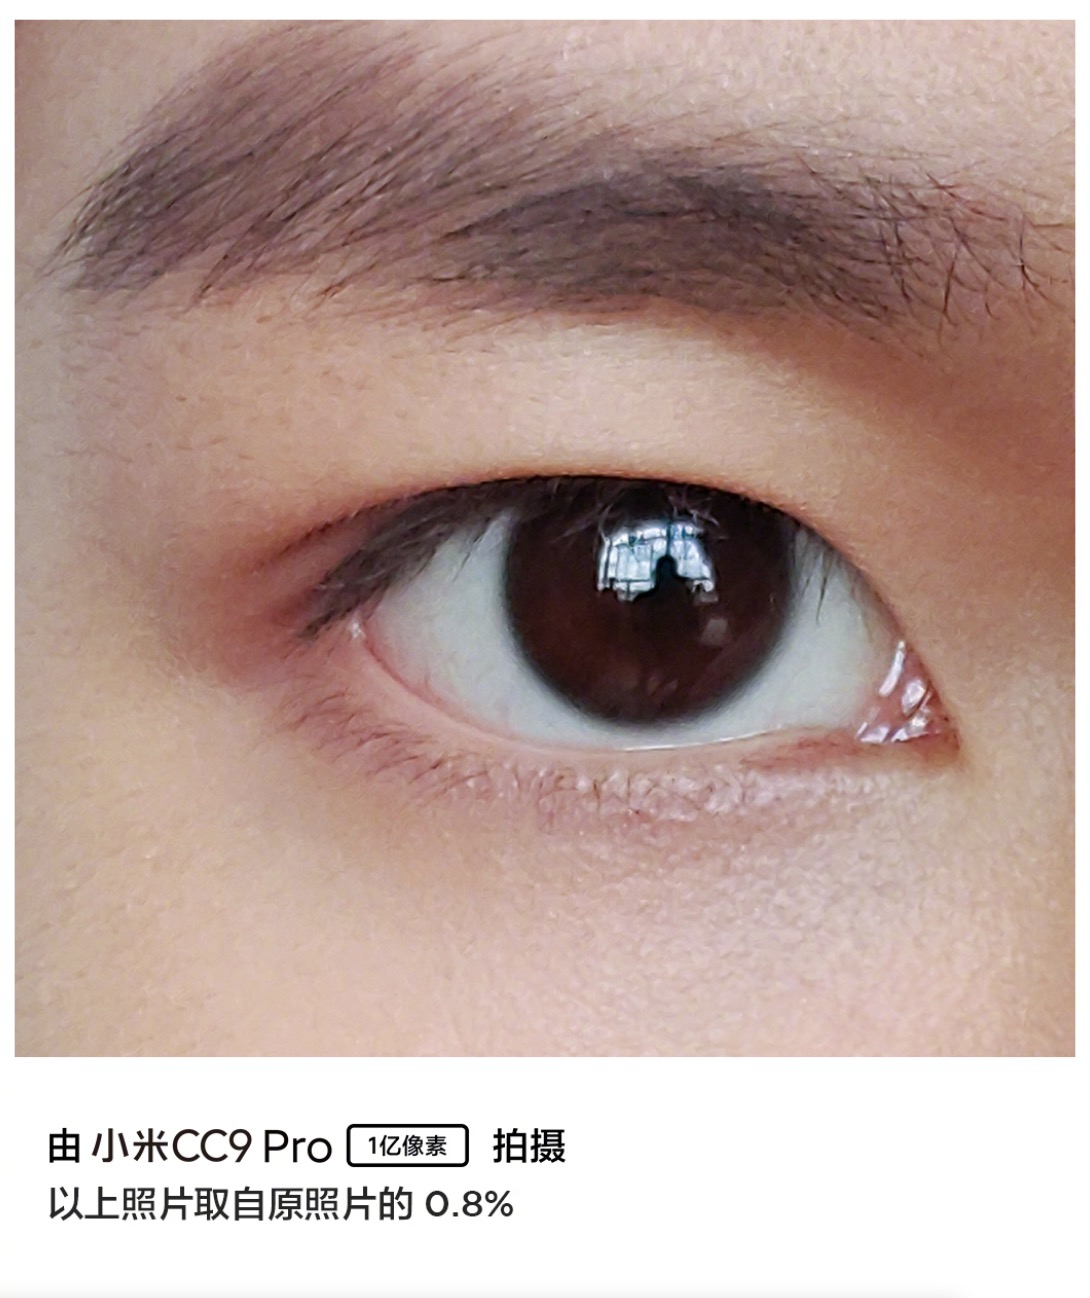 Xiaomi đăng tải ảnh chụp từ camera 108MP của CC9
Pro: thấy cả ảnh phản chiếu trong mắt